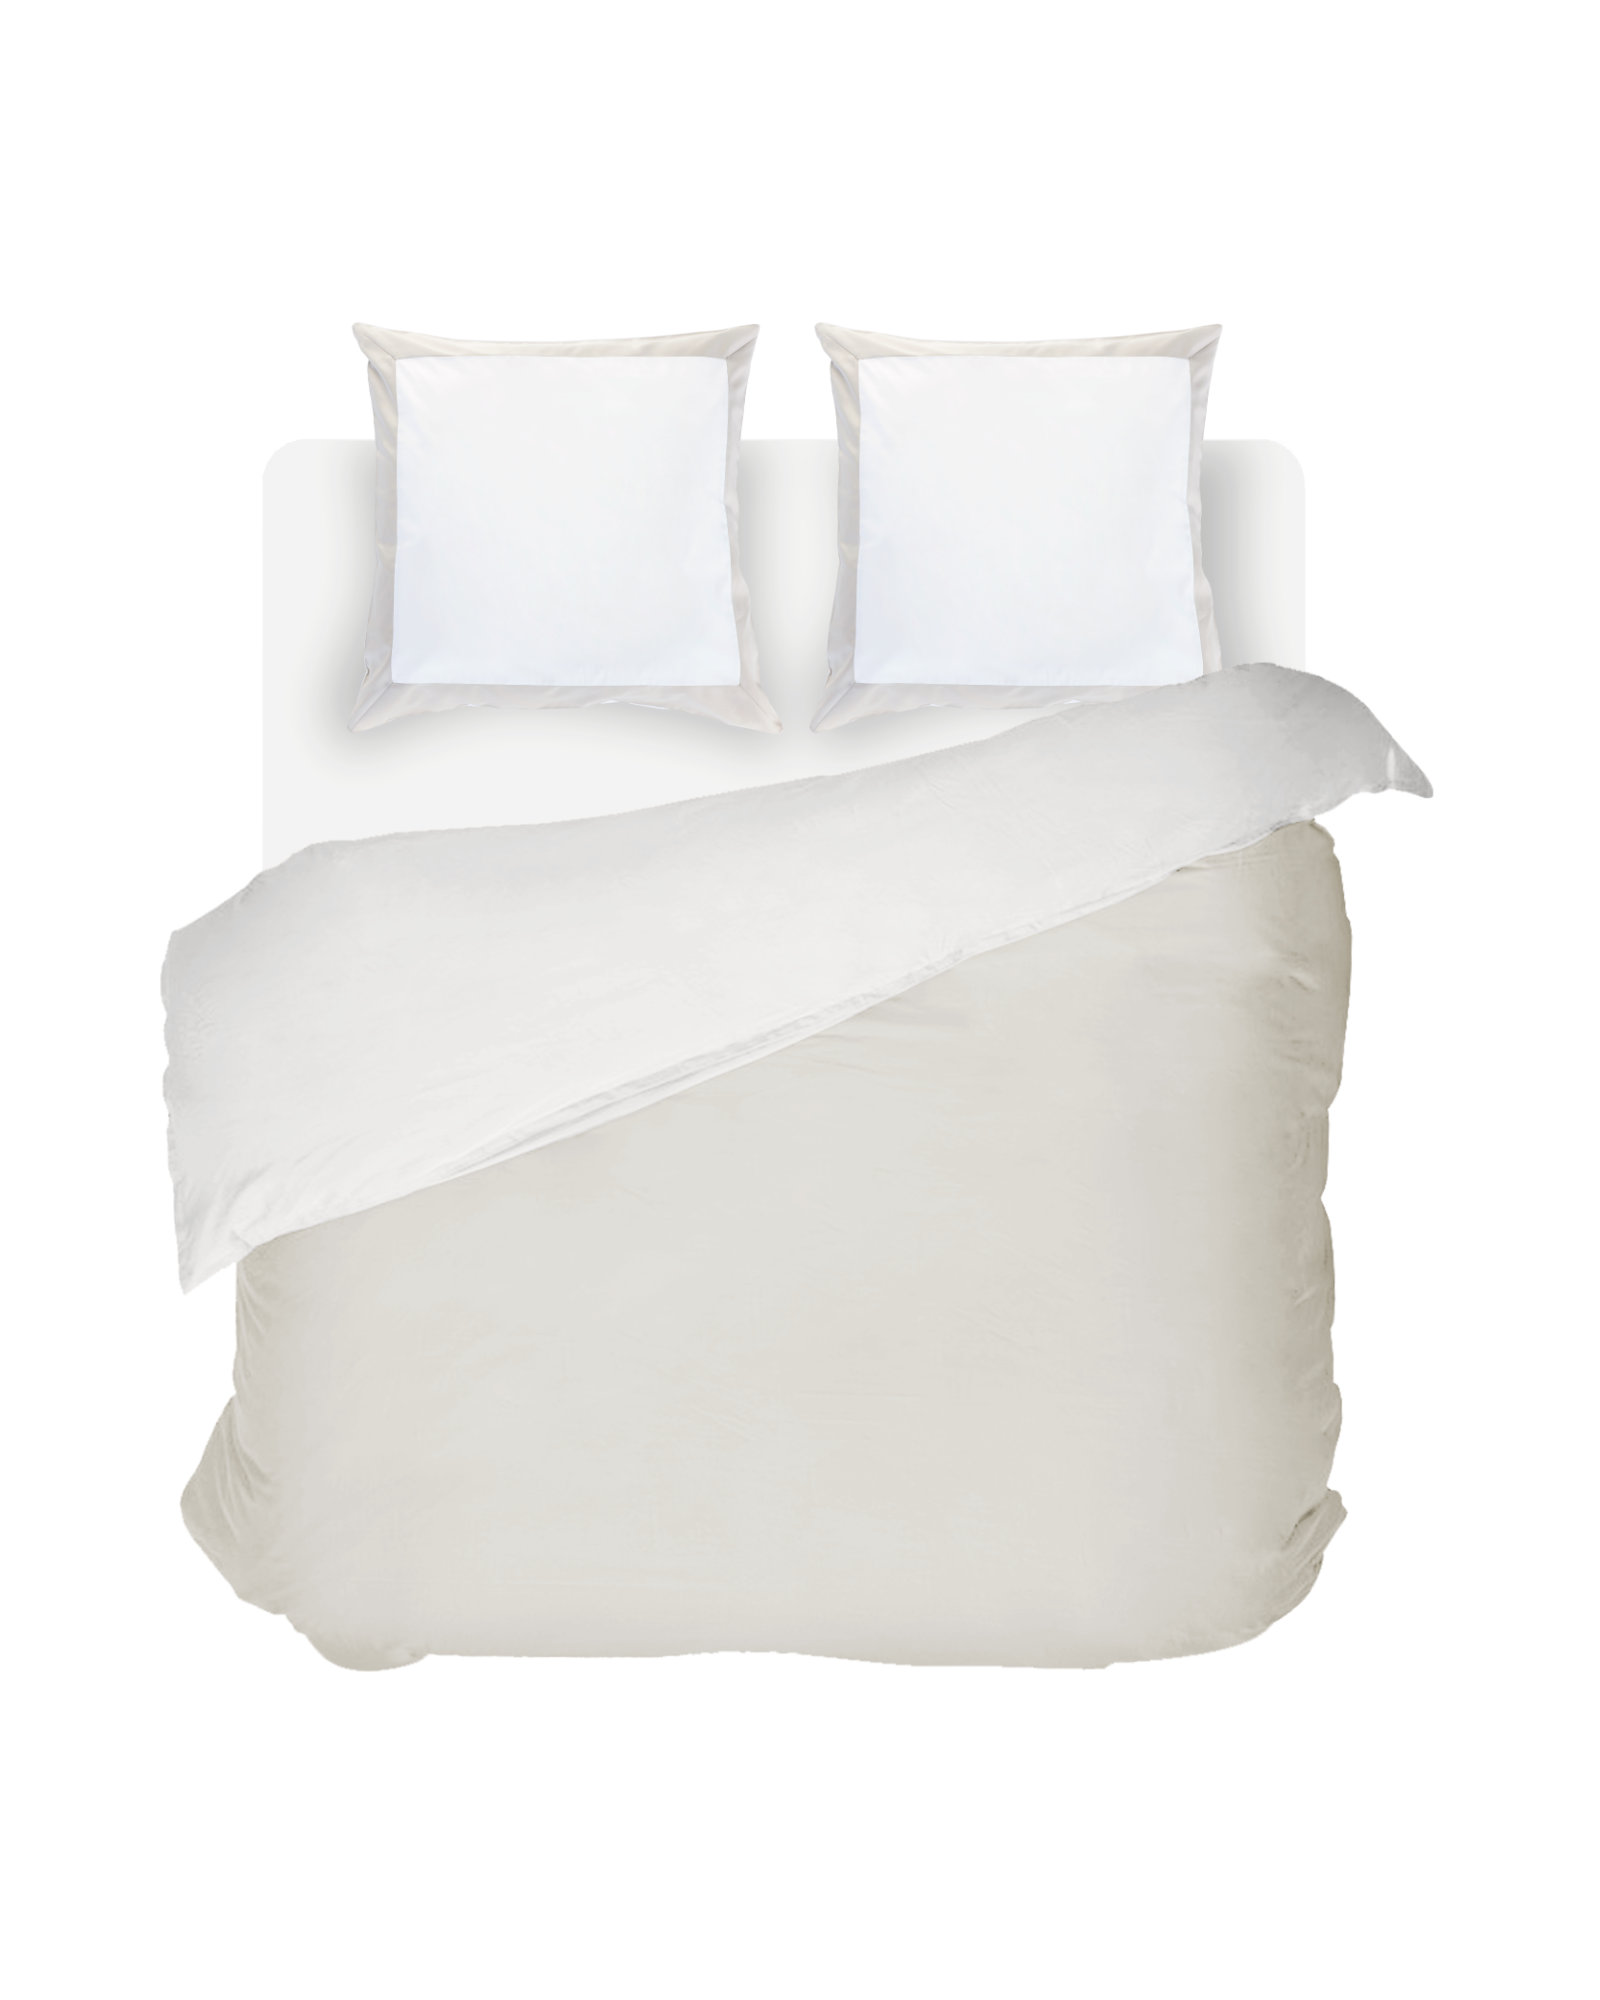 Bed linen set LIMOGES White/Linen